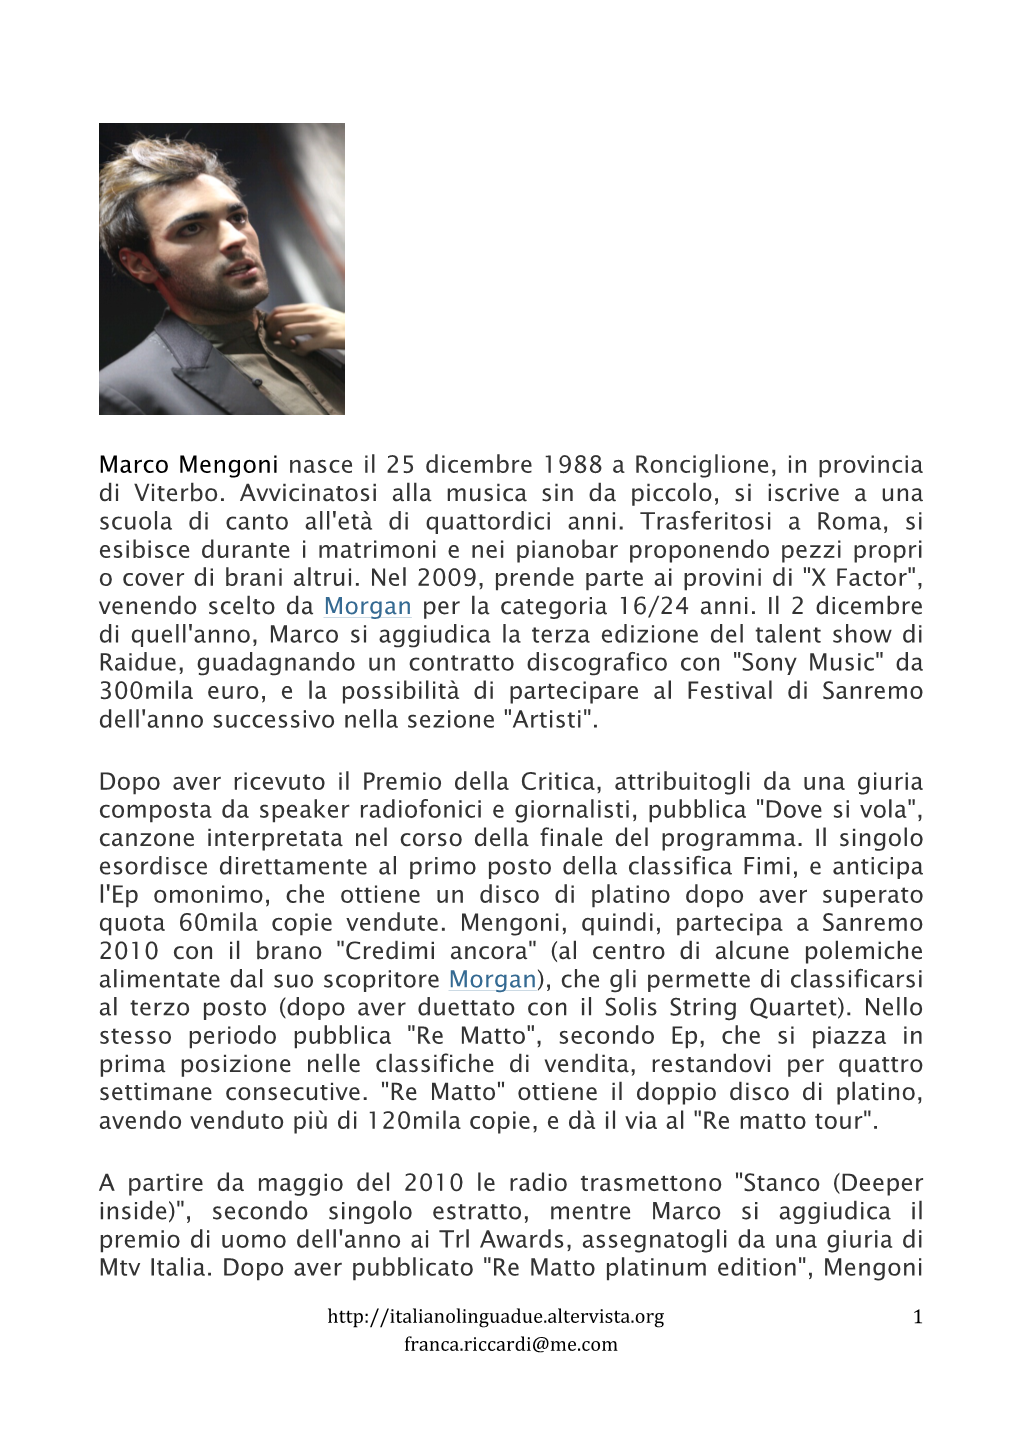 Marco Mengoni Nasce Il 25 Dicembre 1988 a Ronciglione, in Provincia Di Viterbo